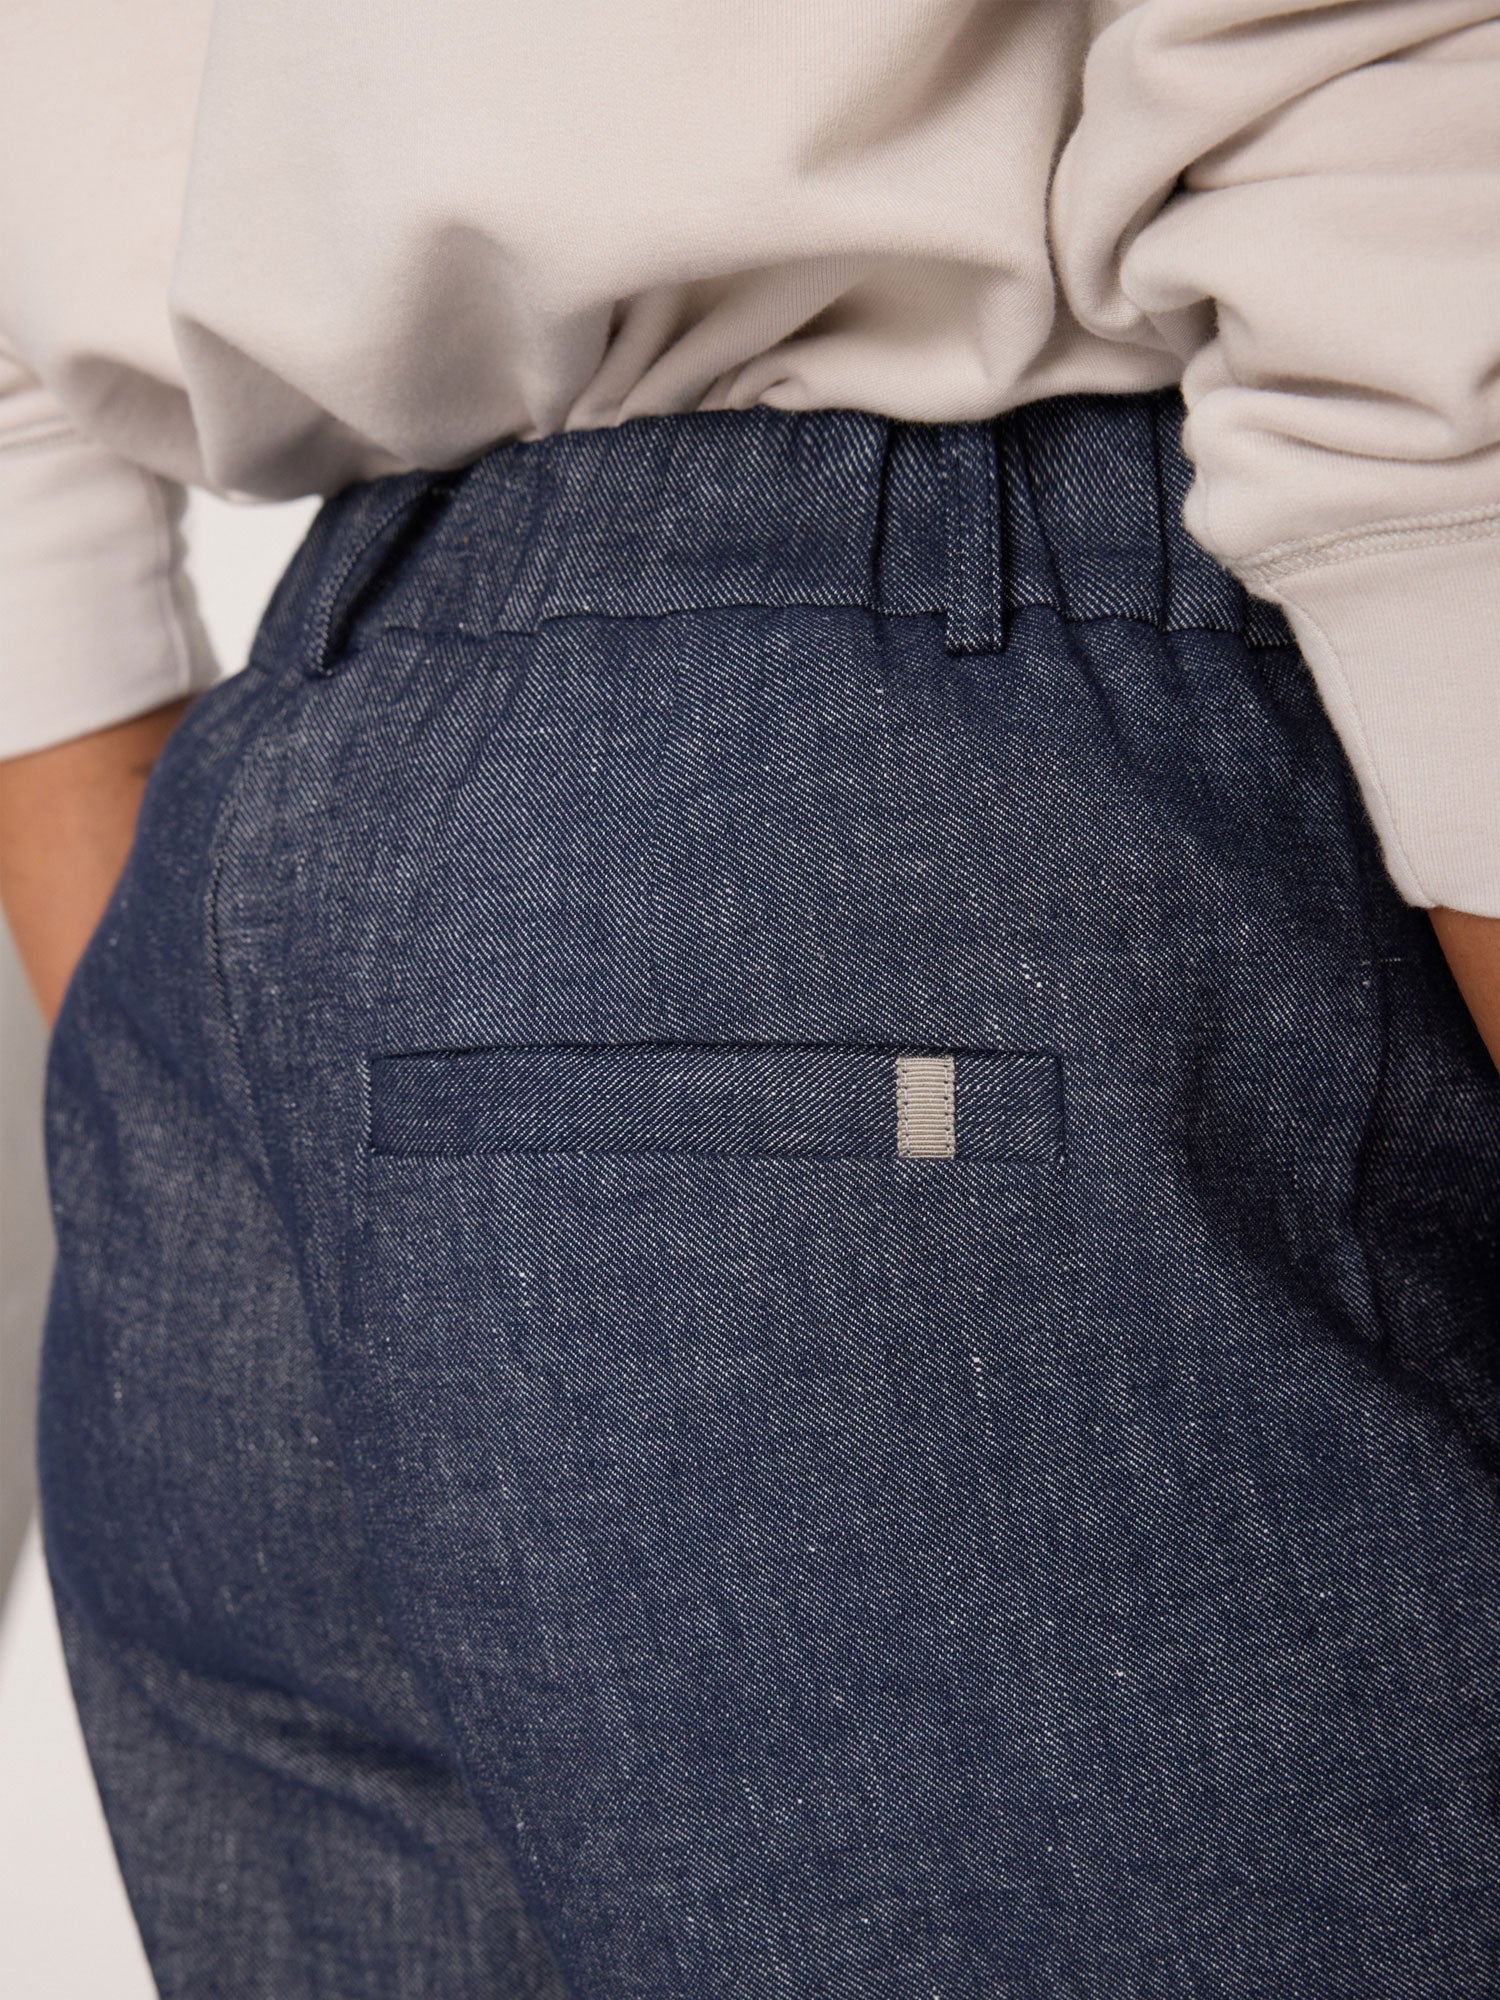 Talia blue cropped cotton linen pant close up